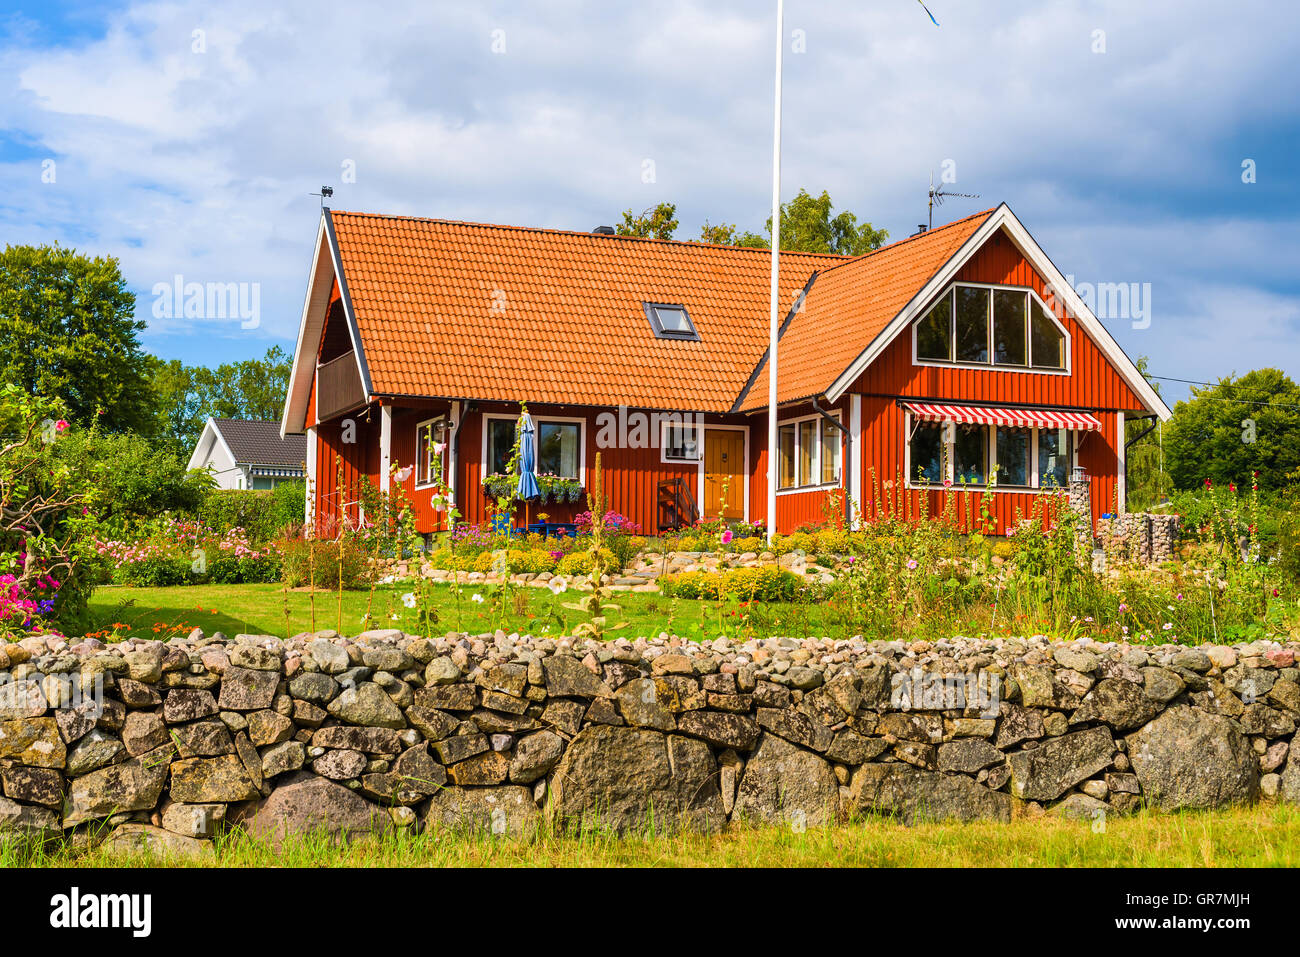 Karlskrona, Schweden - 1. September 2016: Gut erhaltene Steinmauern und Gärten machen den Verkaufswert des Hauses hinauf. Hier ein Stockfoto